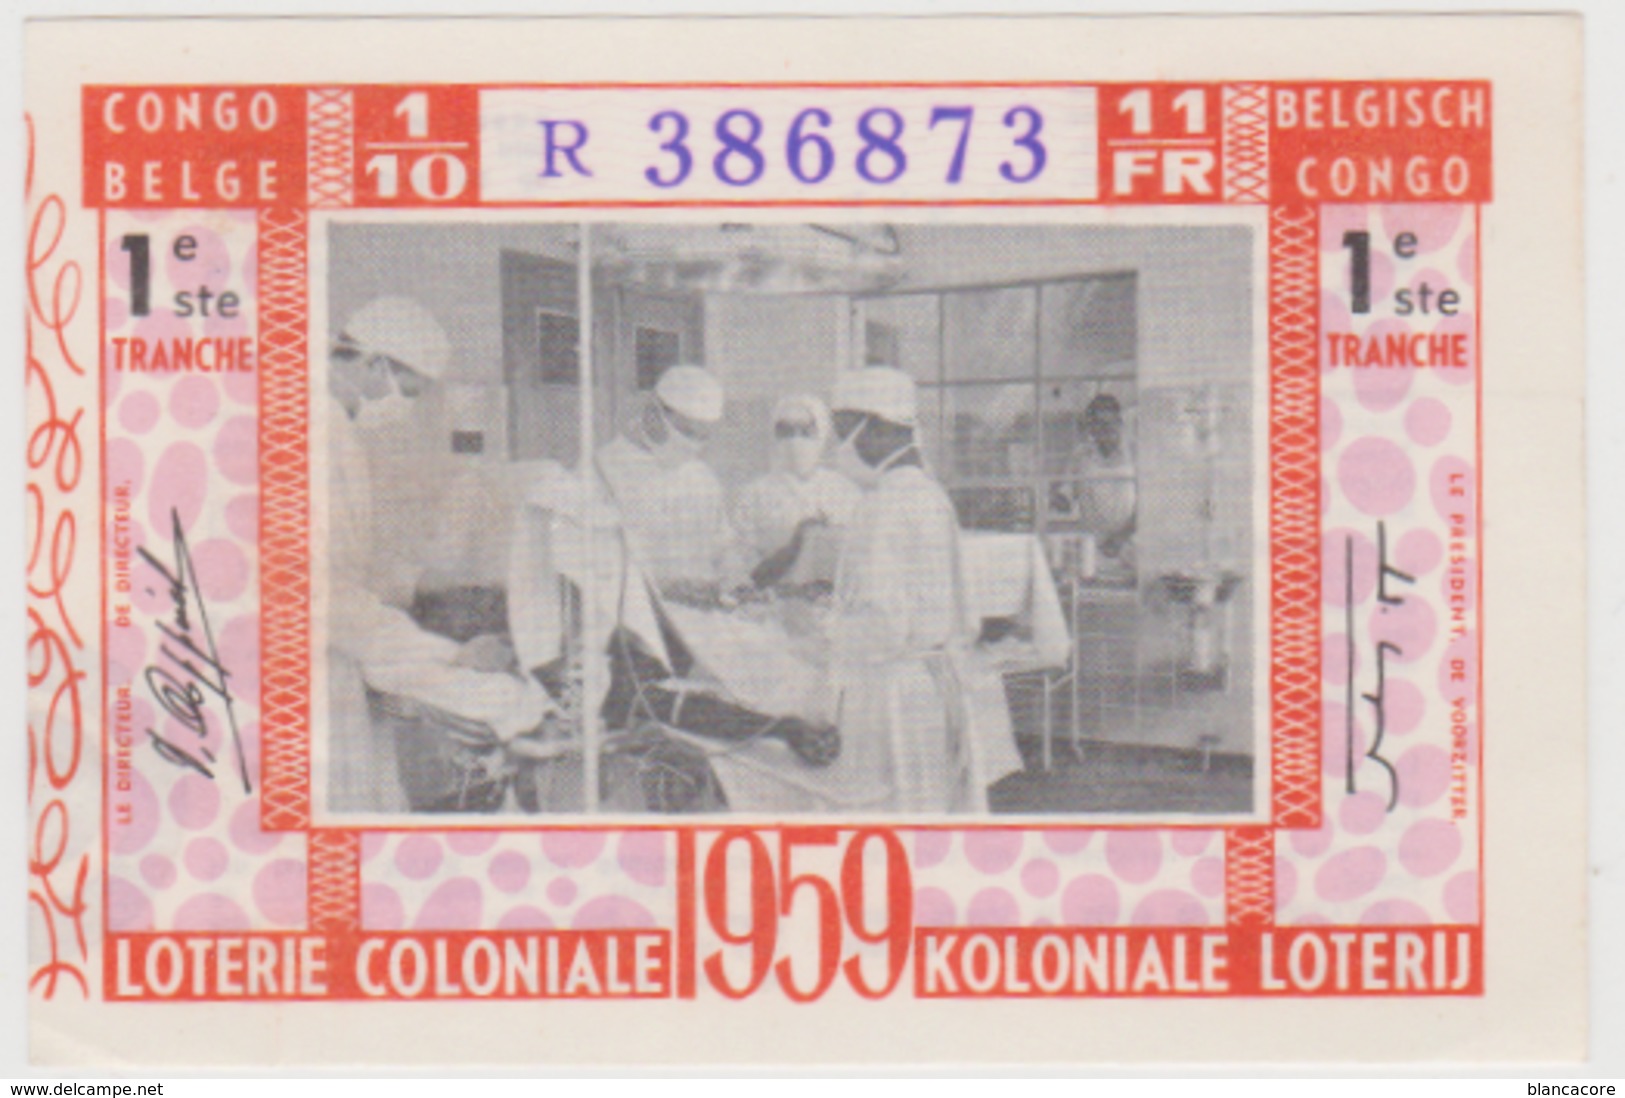 KOLONIALE LOTERIJ LOTERIE COLONIALE  CONGO BELGE 1959 - Billets De Loterie